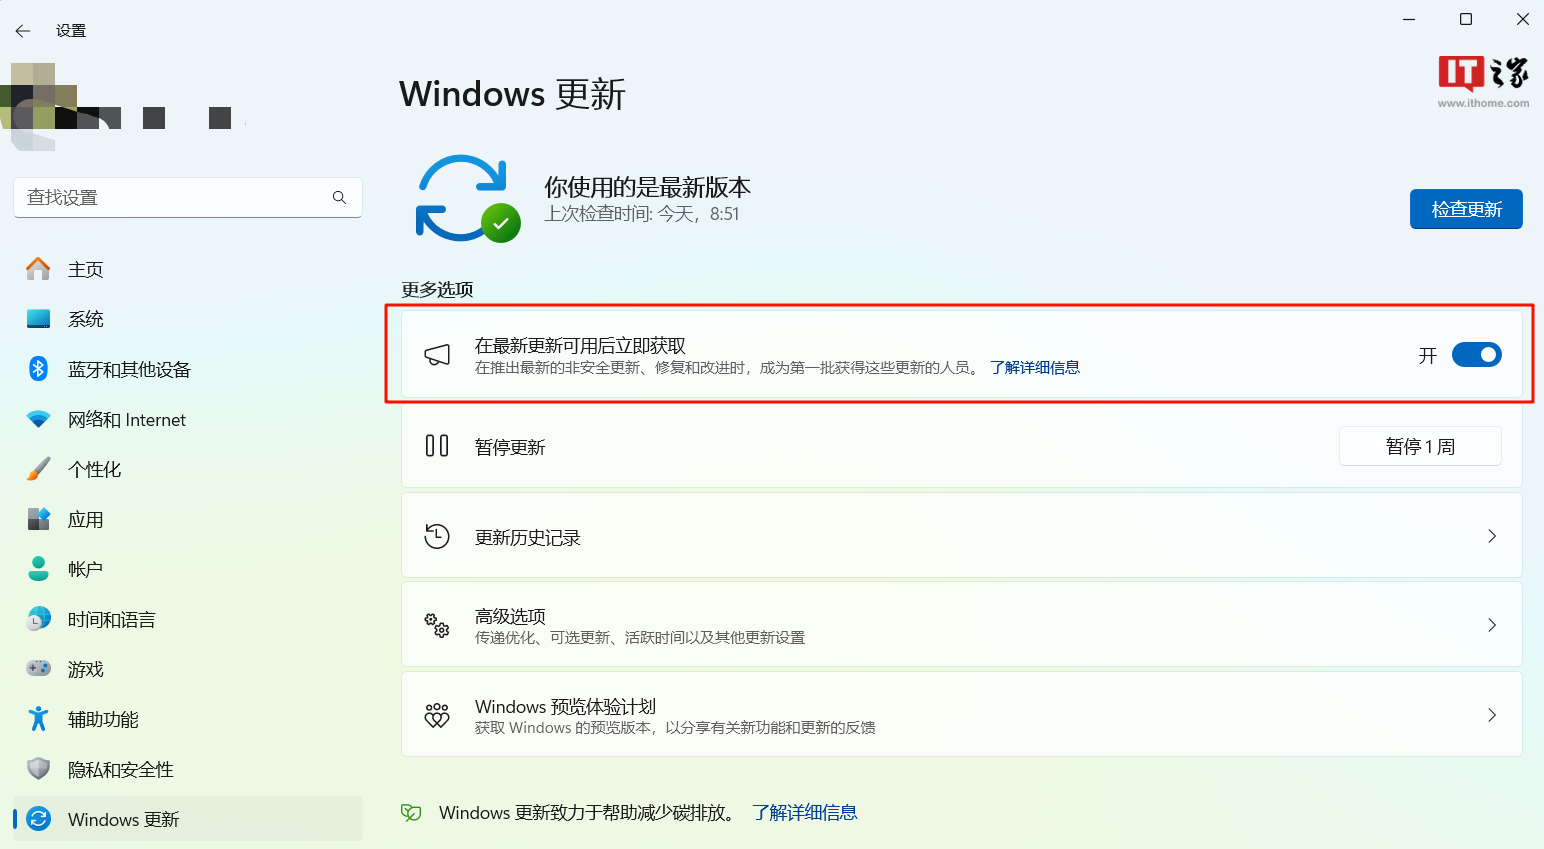 微软发布 Windows 11 Beta 预览版 Build 22635.3212 更新，修复任务栏显示速度慢问题